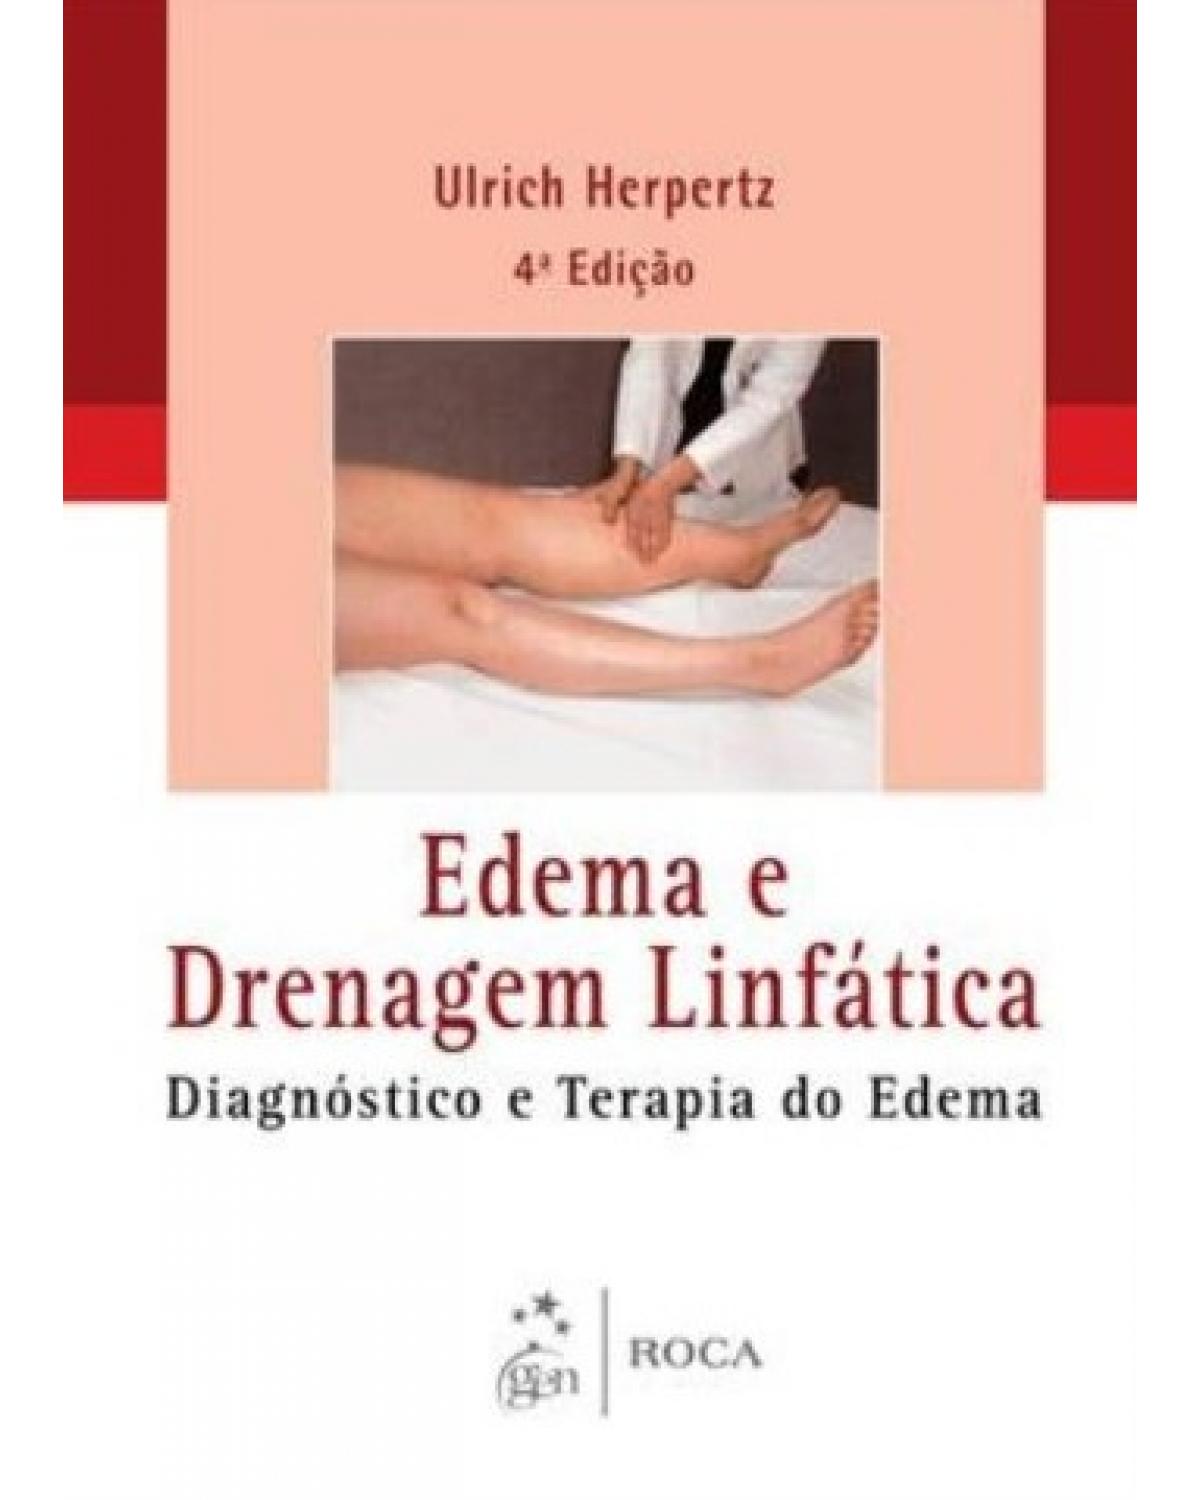 Edema e drenagem linfática - Diagnóstico e terapia do edema - 4ª Edição | 2013